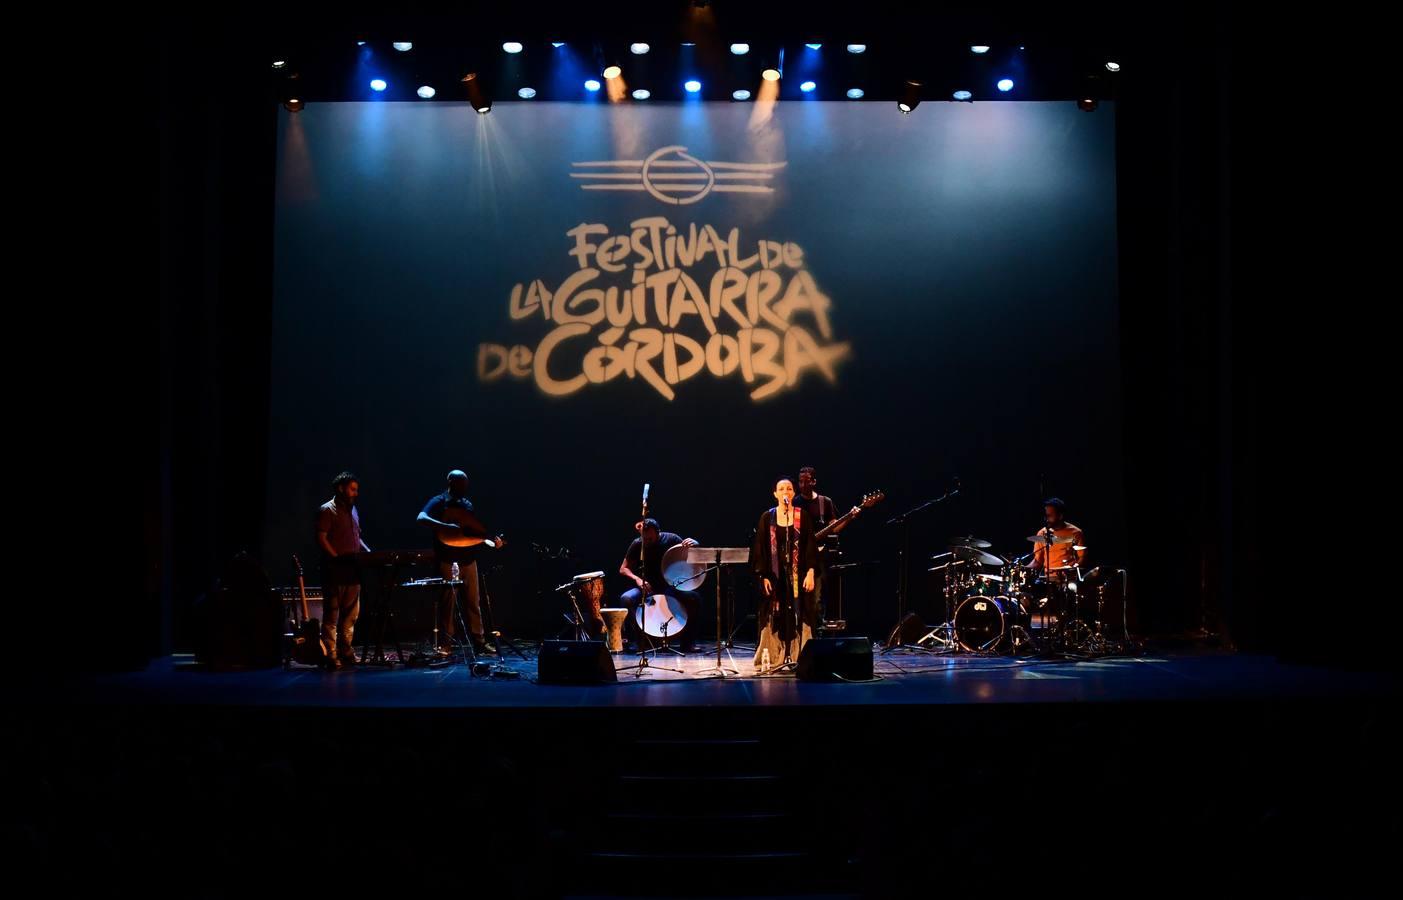 Festival de la Guitarra de Córdoba | Miguel Poveda y Lekhfa